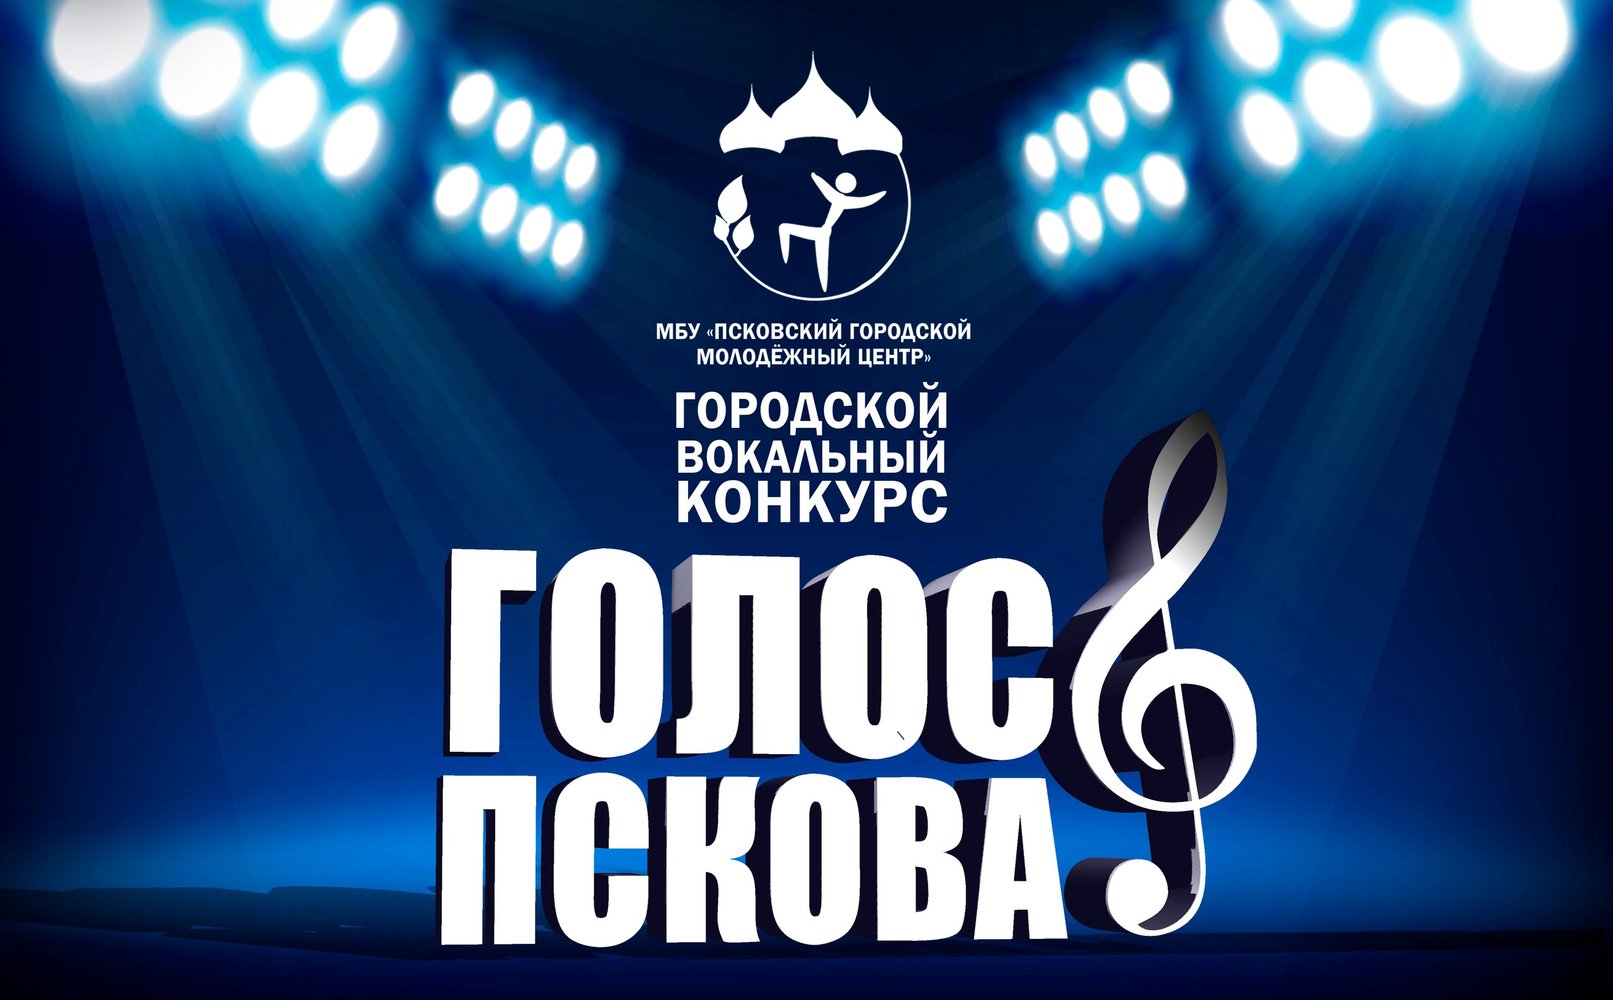 С 1 ноября стартовал прием заявок на участие в вокальном конкурсе «Голос Пскова-2017».